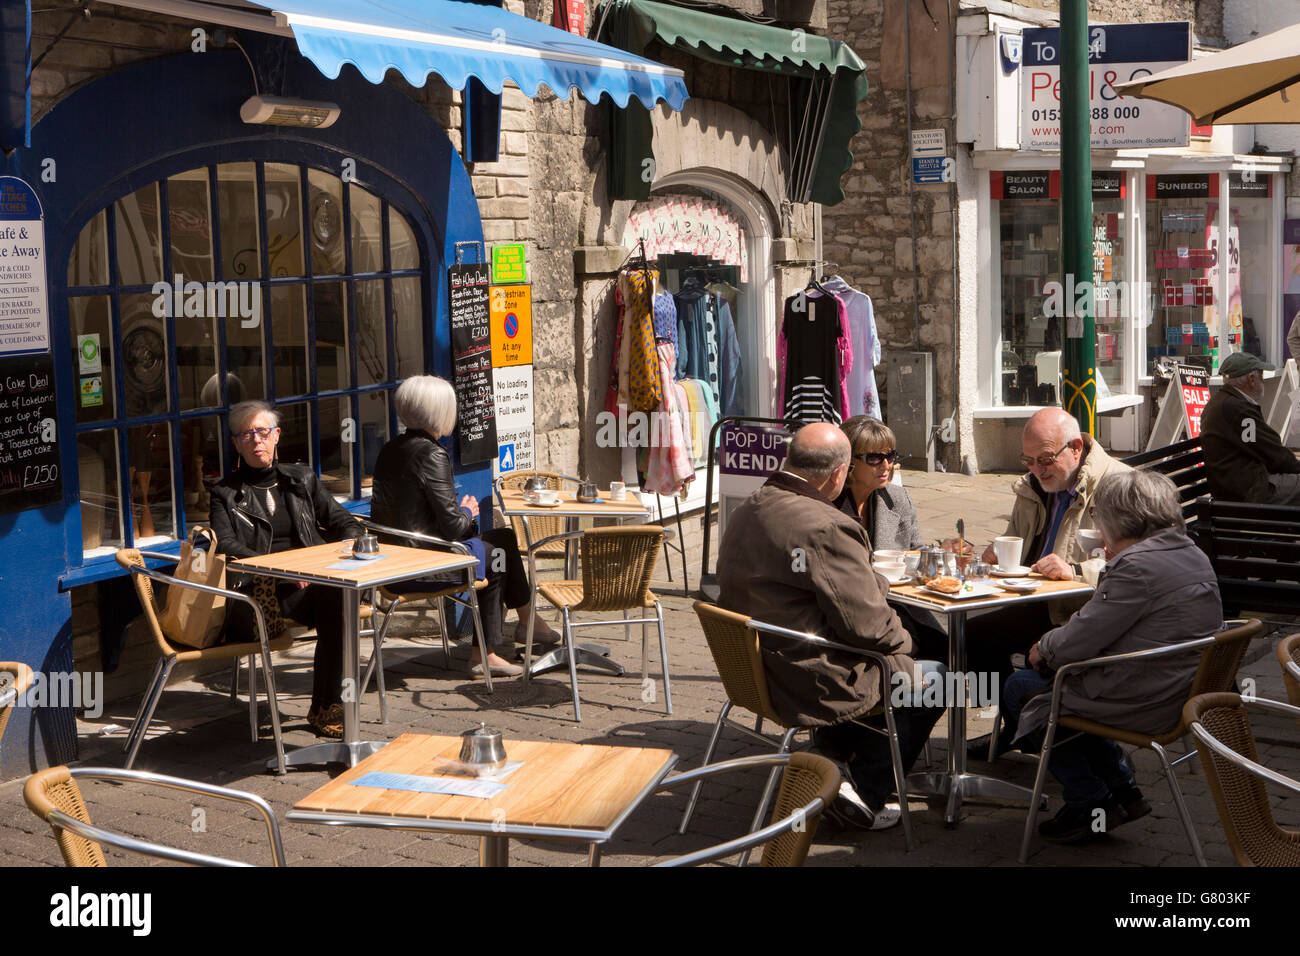 UK, Cumbria, Kendal, Finkle Street, Kunden, saßen am Bürgersteig Café Tisch Stockfoto